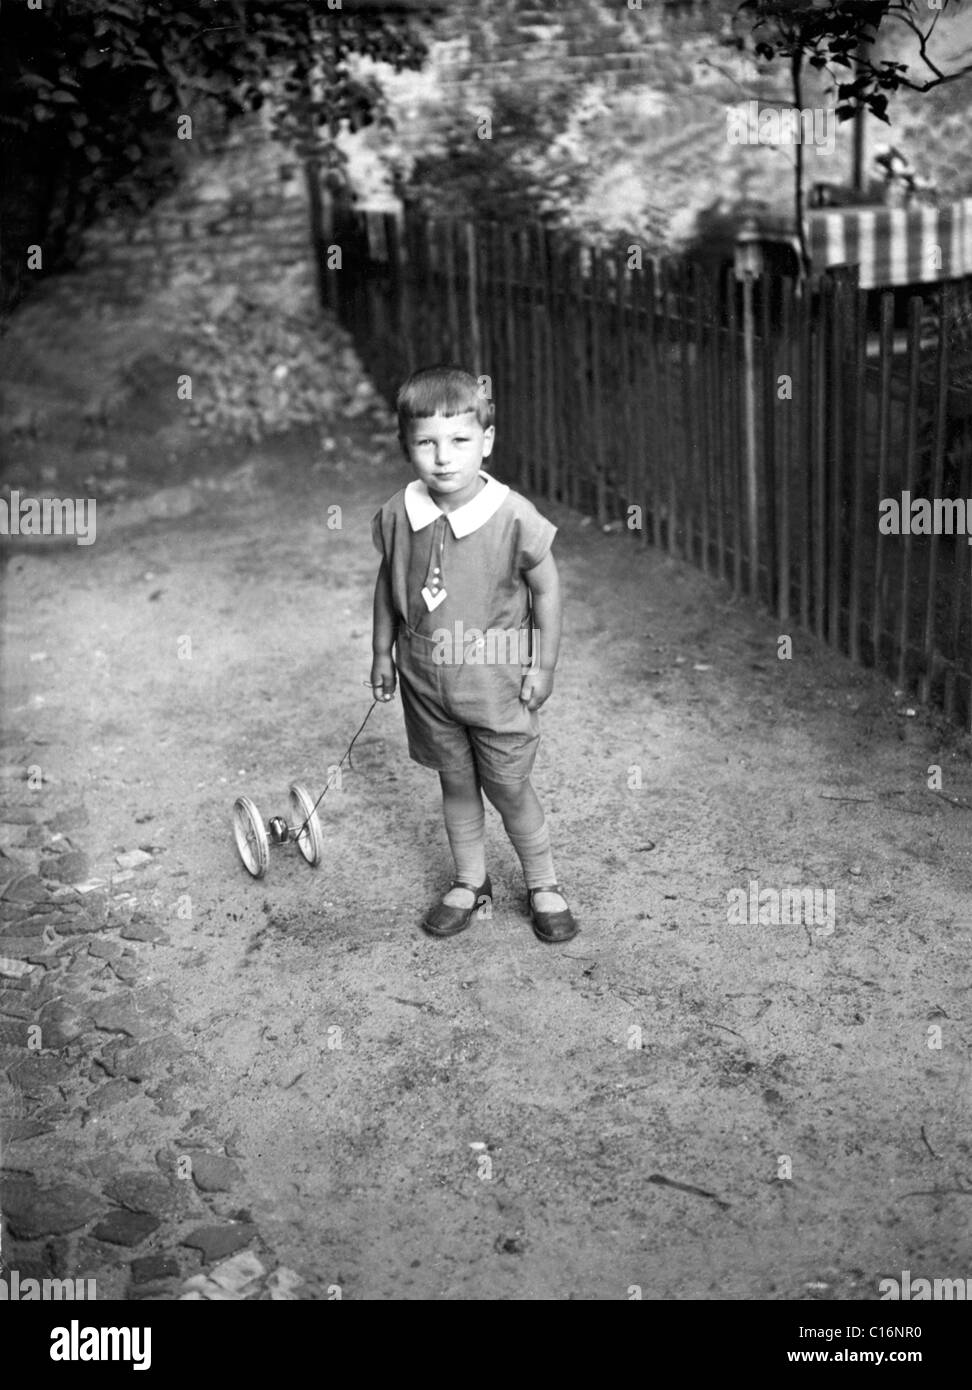 Photographie historique, enfant avec jouet, années 30 Banque D'Images